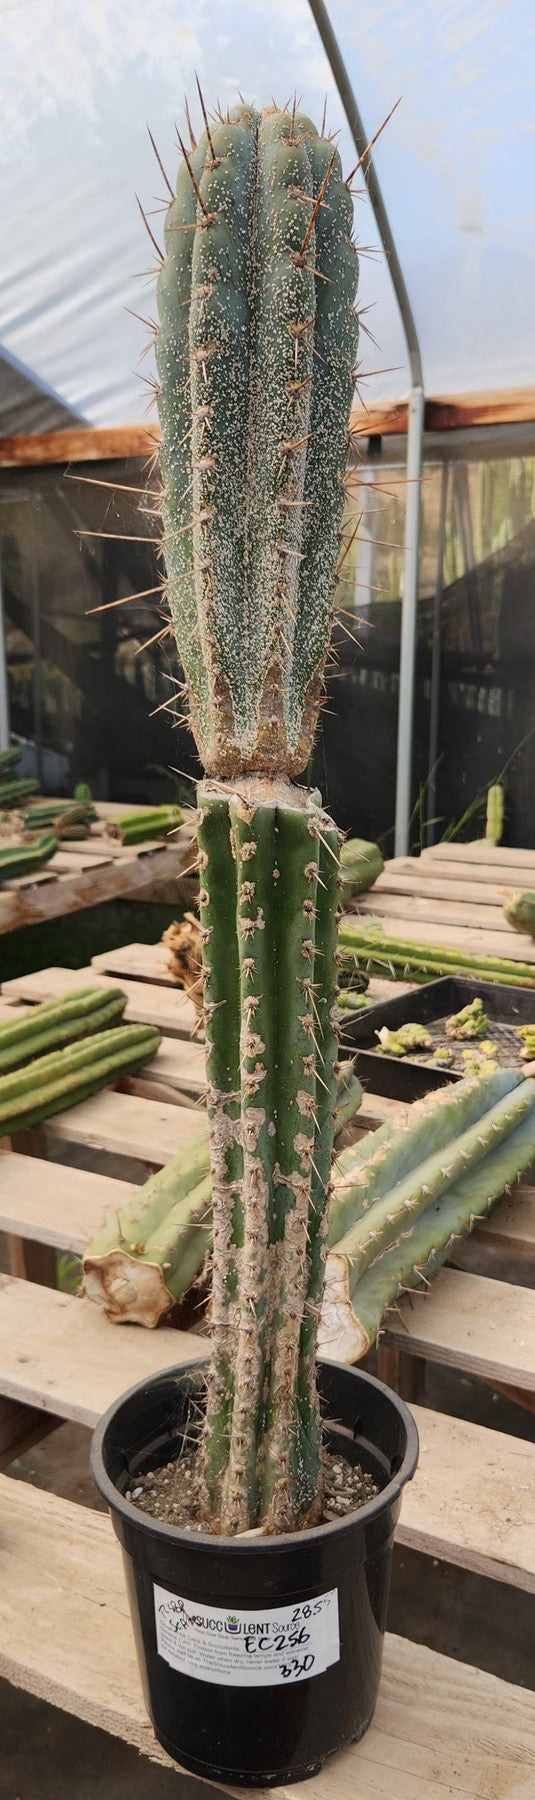 #EC256 EXACT Trichocereus Peruvianus TLC Ornamental Cactus Hospital Rescue-Cactus - Large - Exact-The Succulent Source